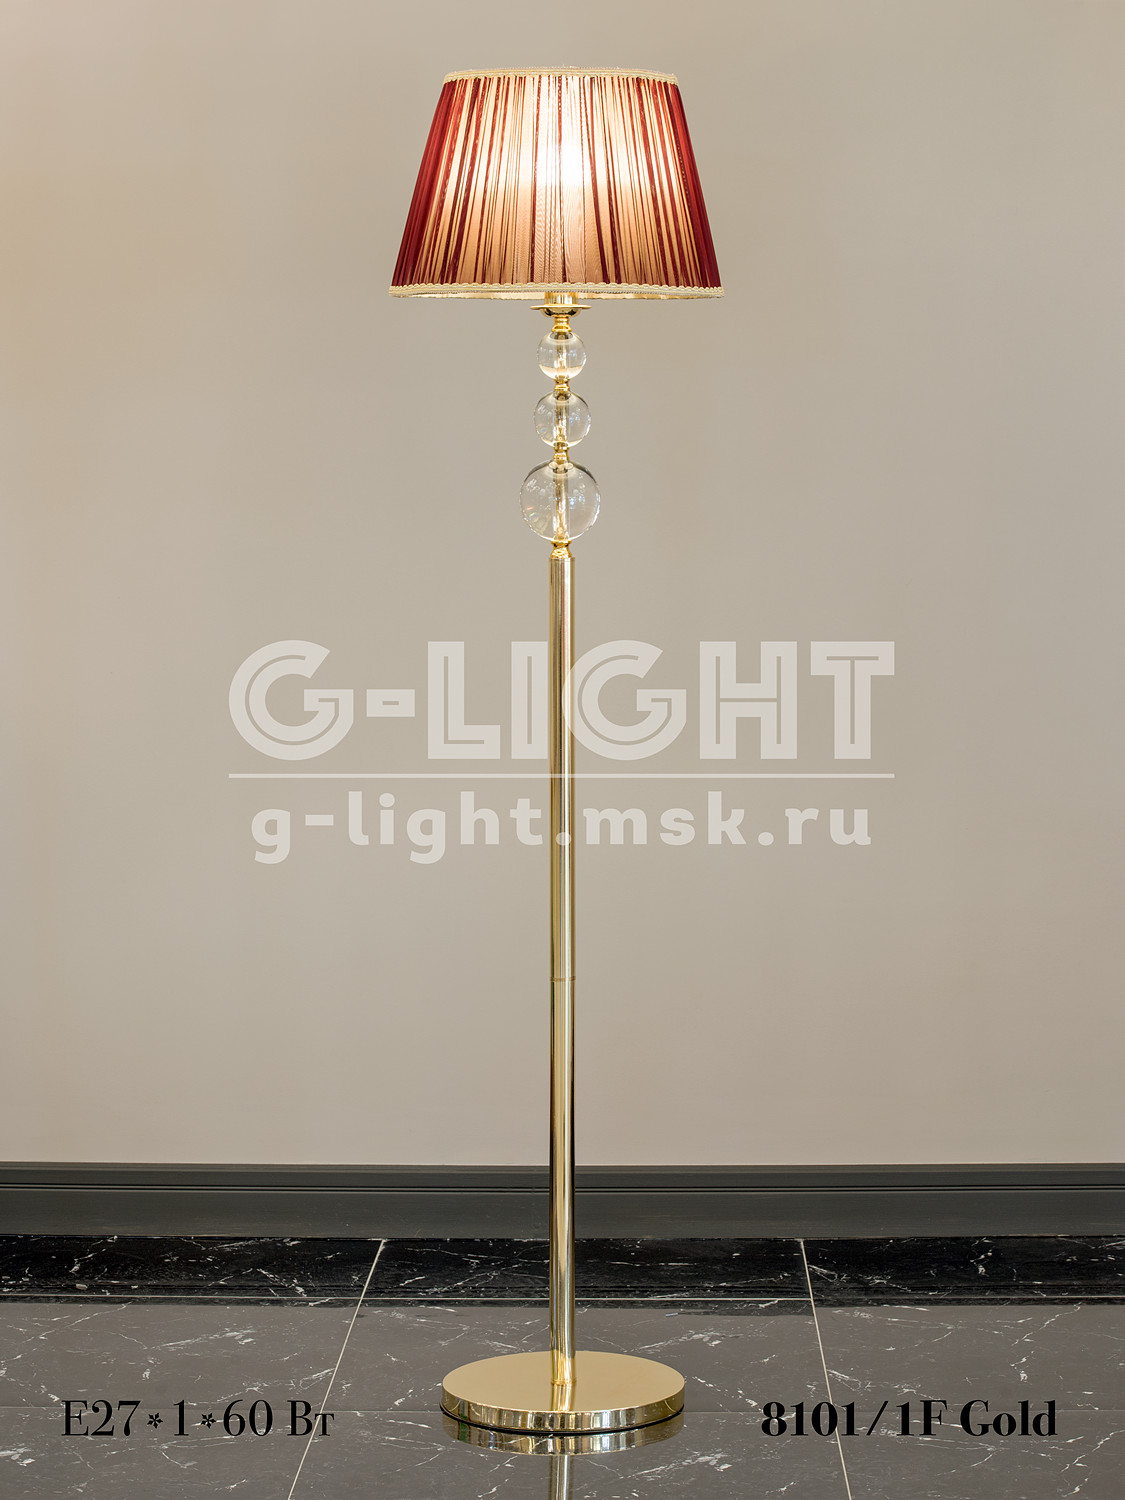 Торшер G-Light 8101/1F Gold - изображение 5